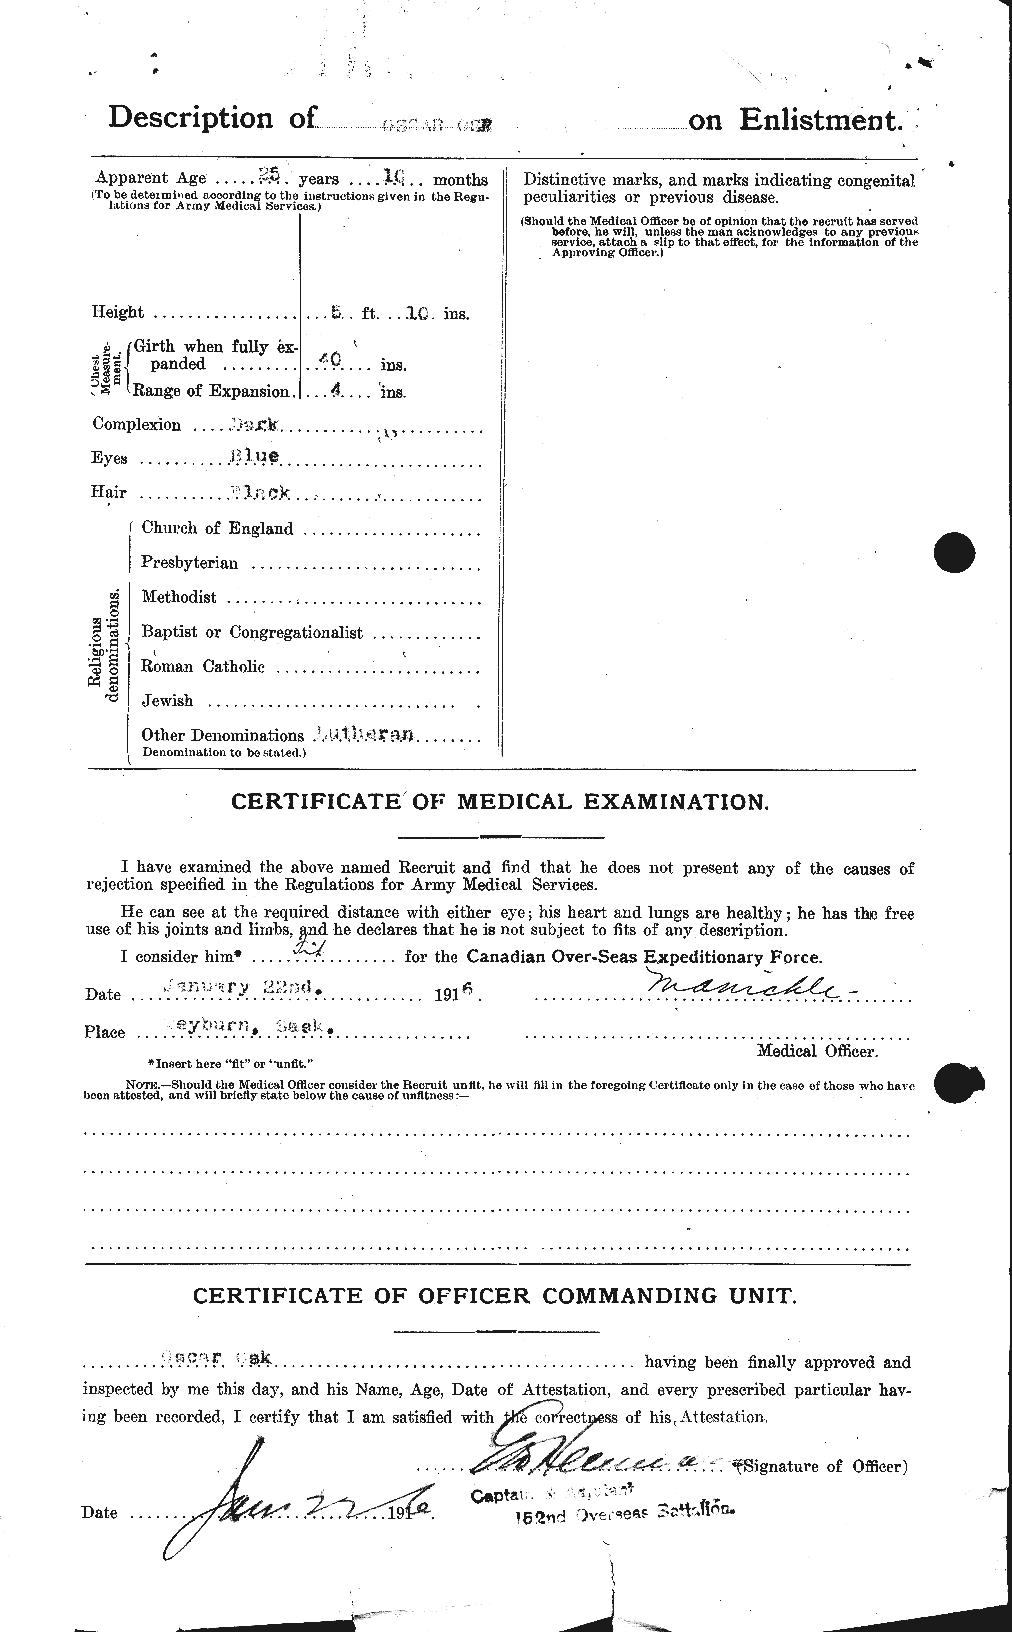 Dossiers du Personnel de la Première Guerre mondiale - CEC 560088b